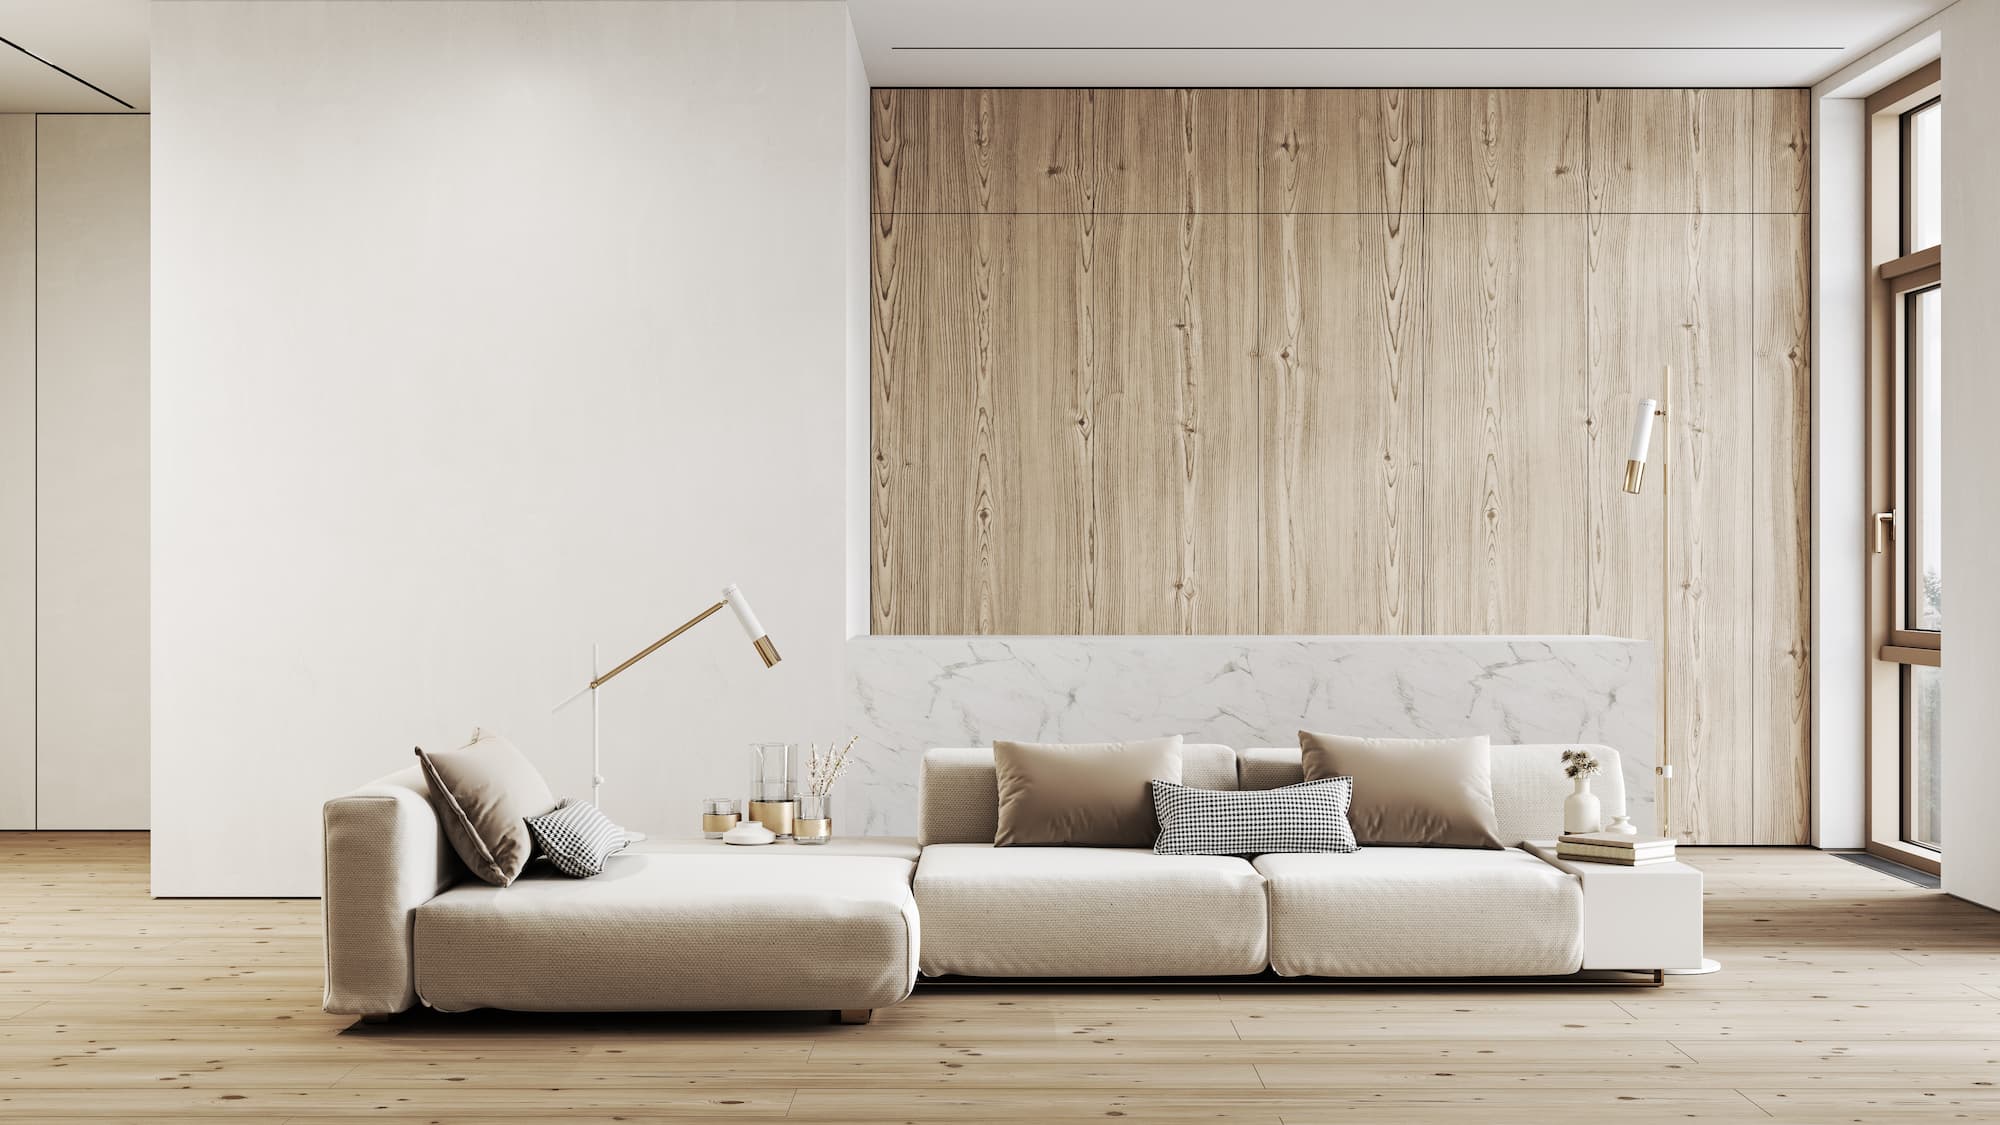 Furniture & Interior Design - Interior Essentials